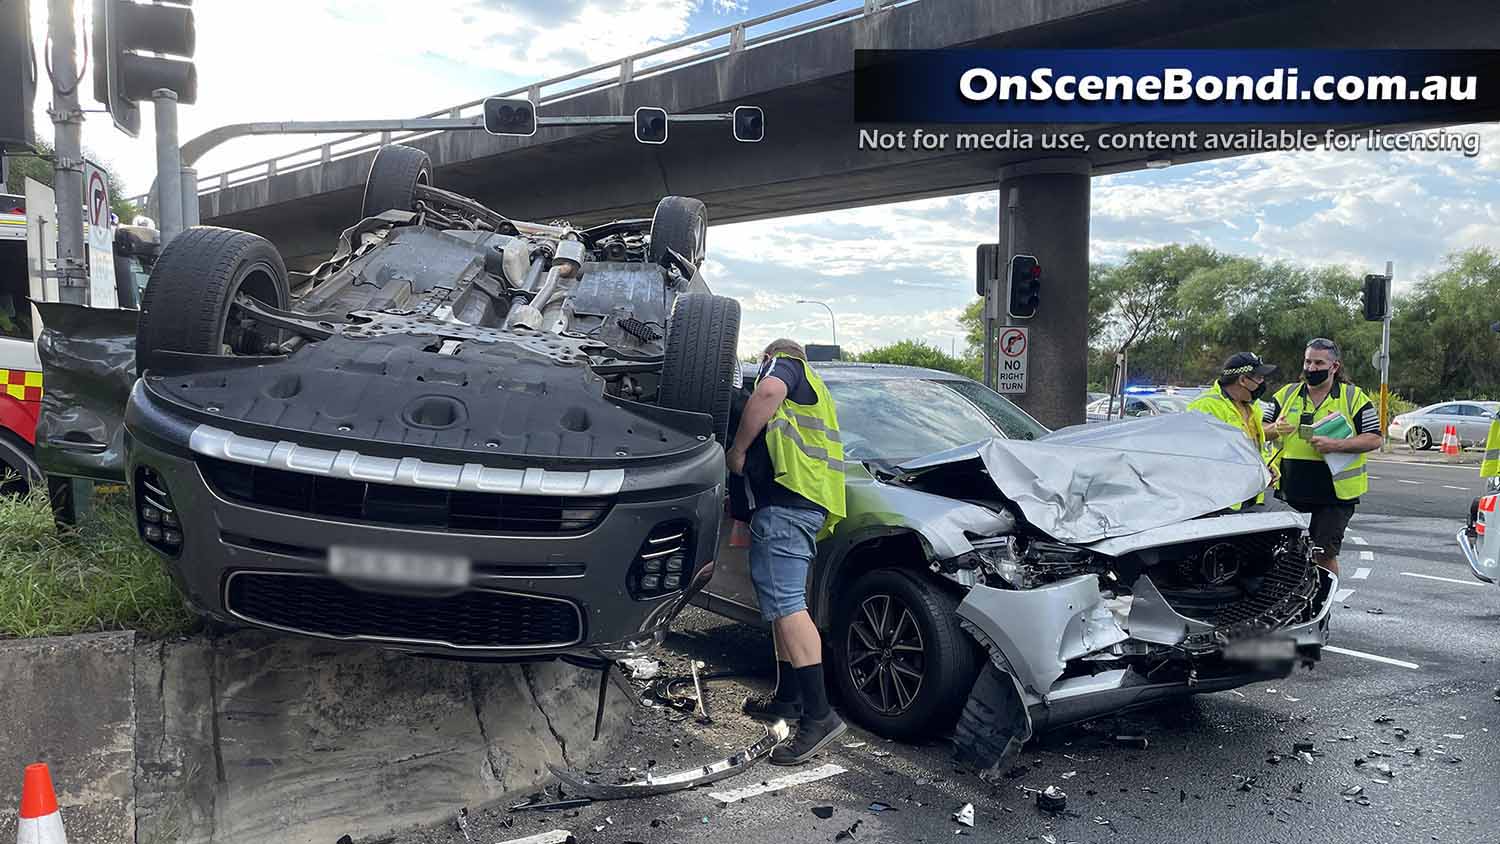 Family escape overturned car after crash in Botany